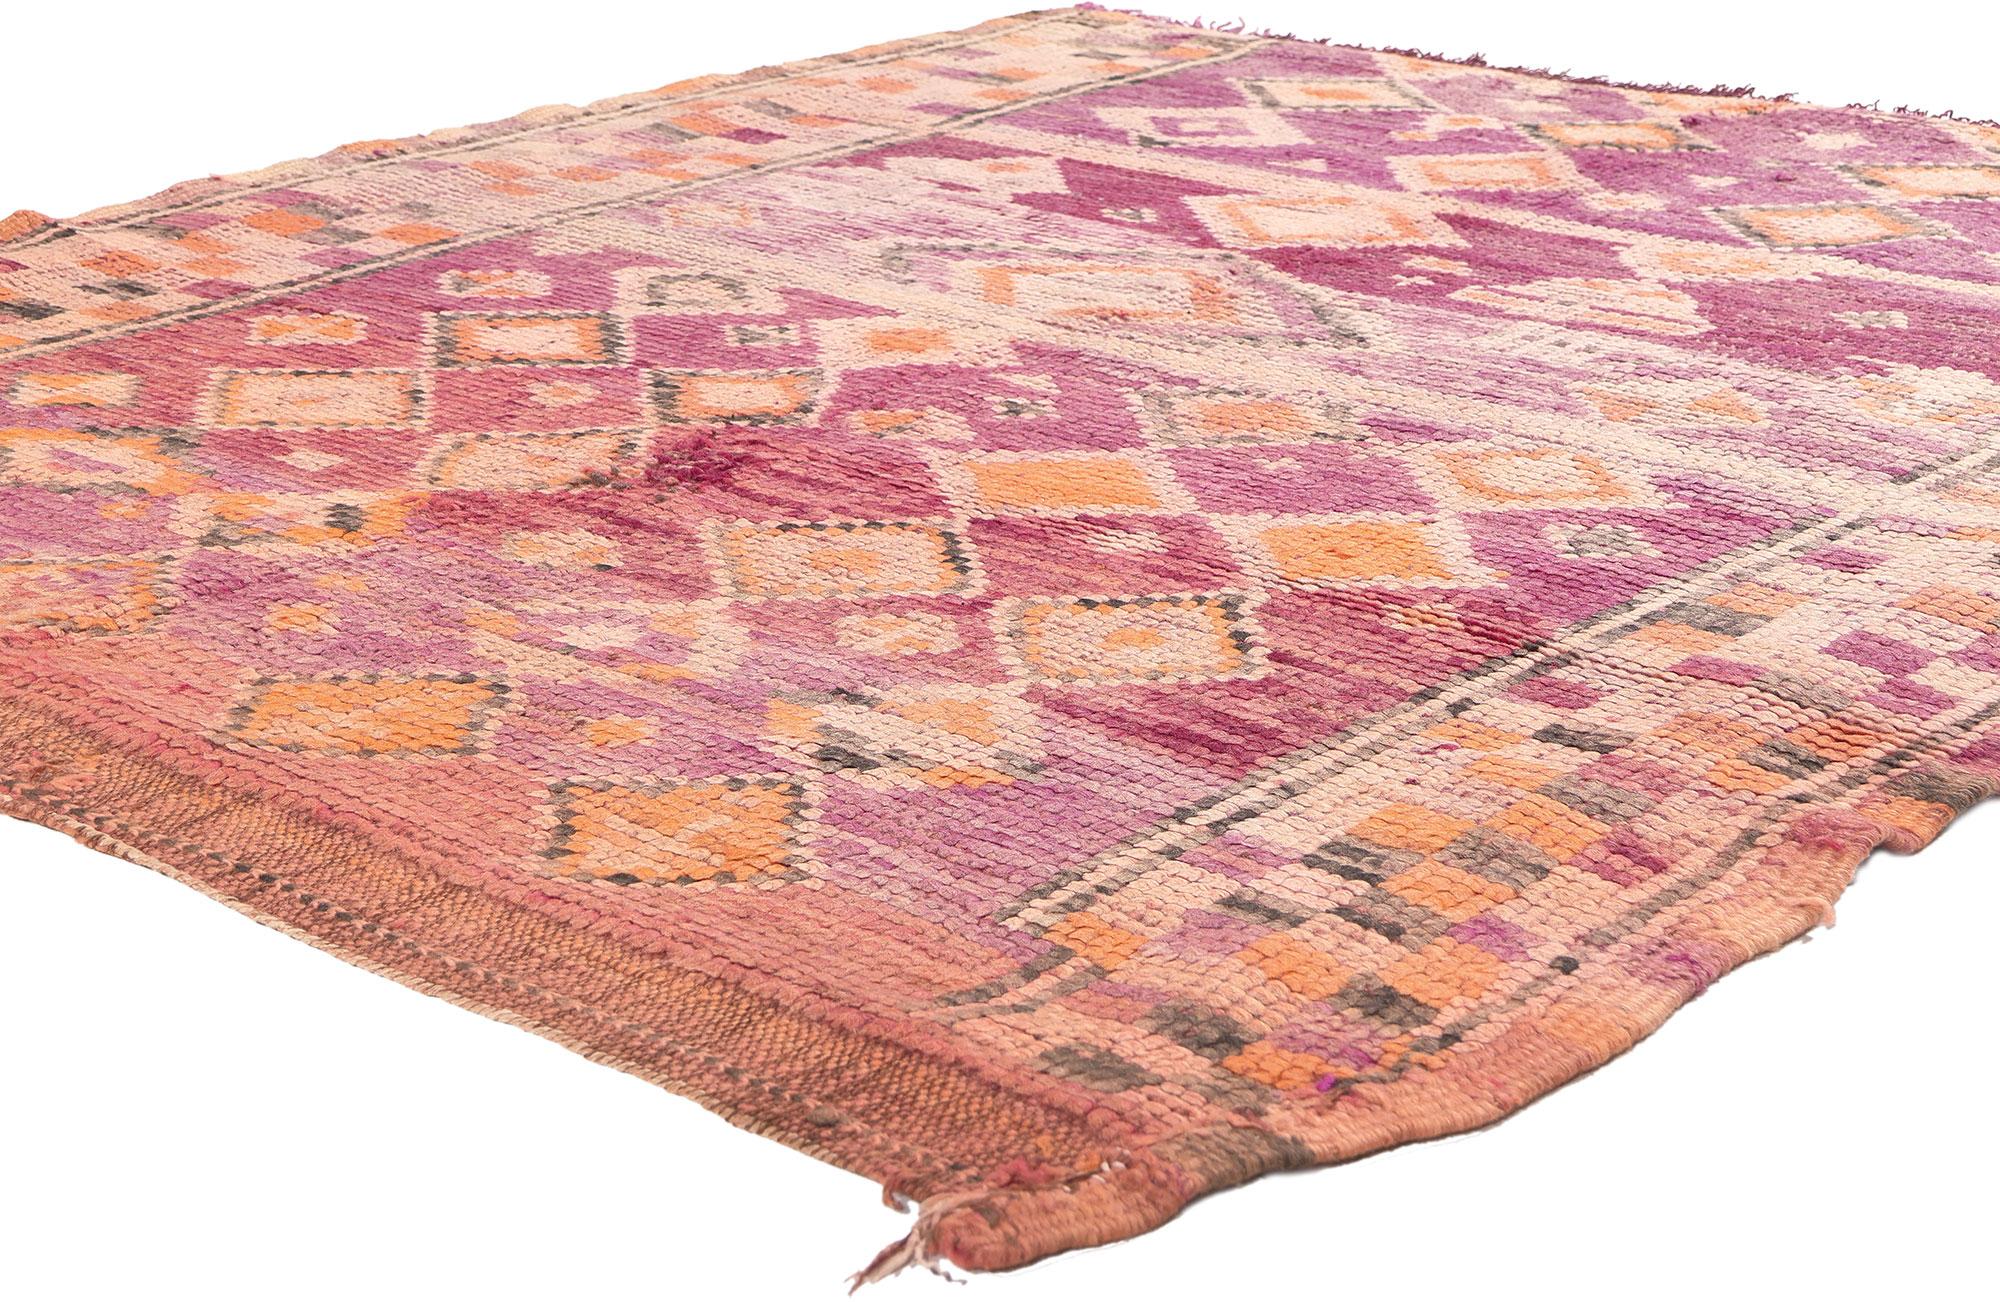 20479 Vintage Boujad Marokkanischer Teppich, 05'05 x 05'10. 
In diesem handgeknüpften marokkanischen Boujad-Teppich aus Wolle trifft die Essenz eines gemütlichen Nomaden auf den lebhaften Rhythmus einer böhmischen Rhapsodie. Das inhärente